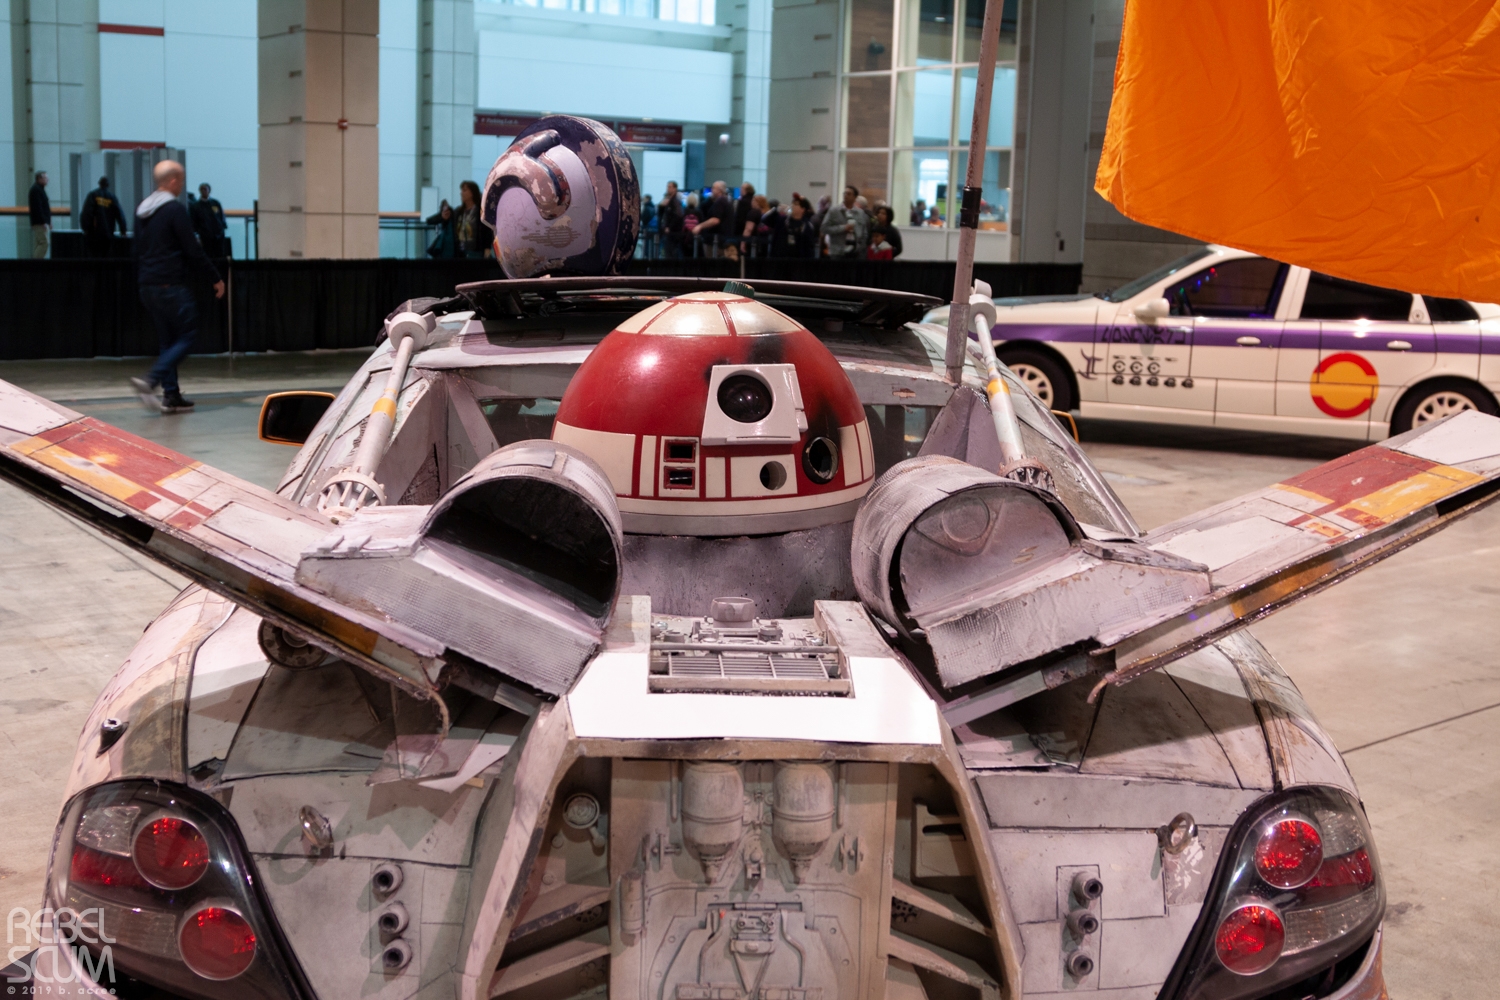 Star-Wars-Celebration-2019-Fan-Vehicles-010.jpg